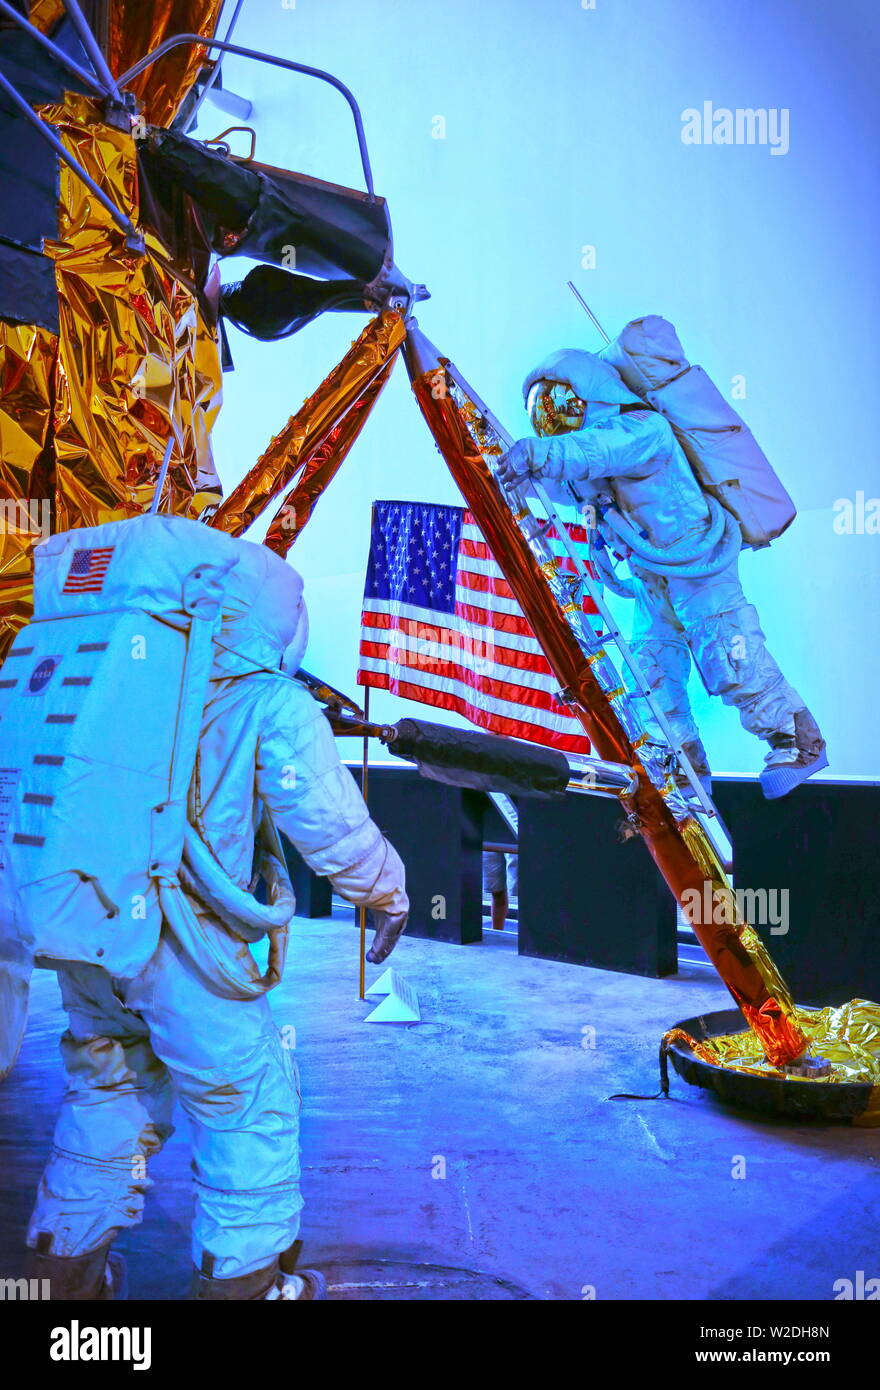 Washington DC, Stati Uniti d'America; Agosto 2015: una scena del famoso programma Apollo, due manichini astronauti escono dalle loro atterraggio lunare e a camminare sulla luna, un Foto Stock